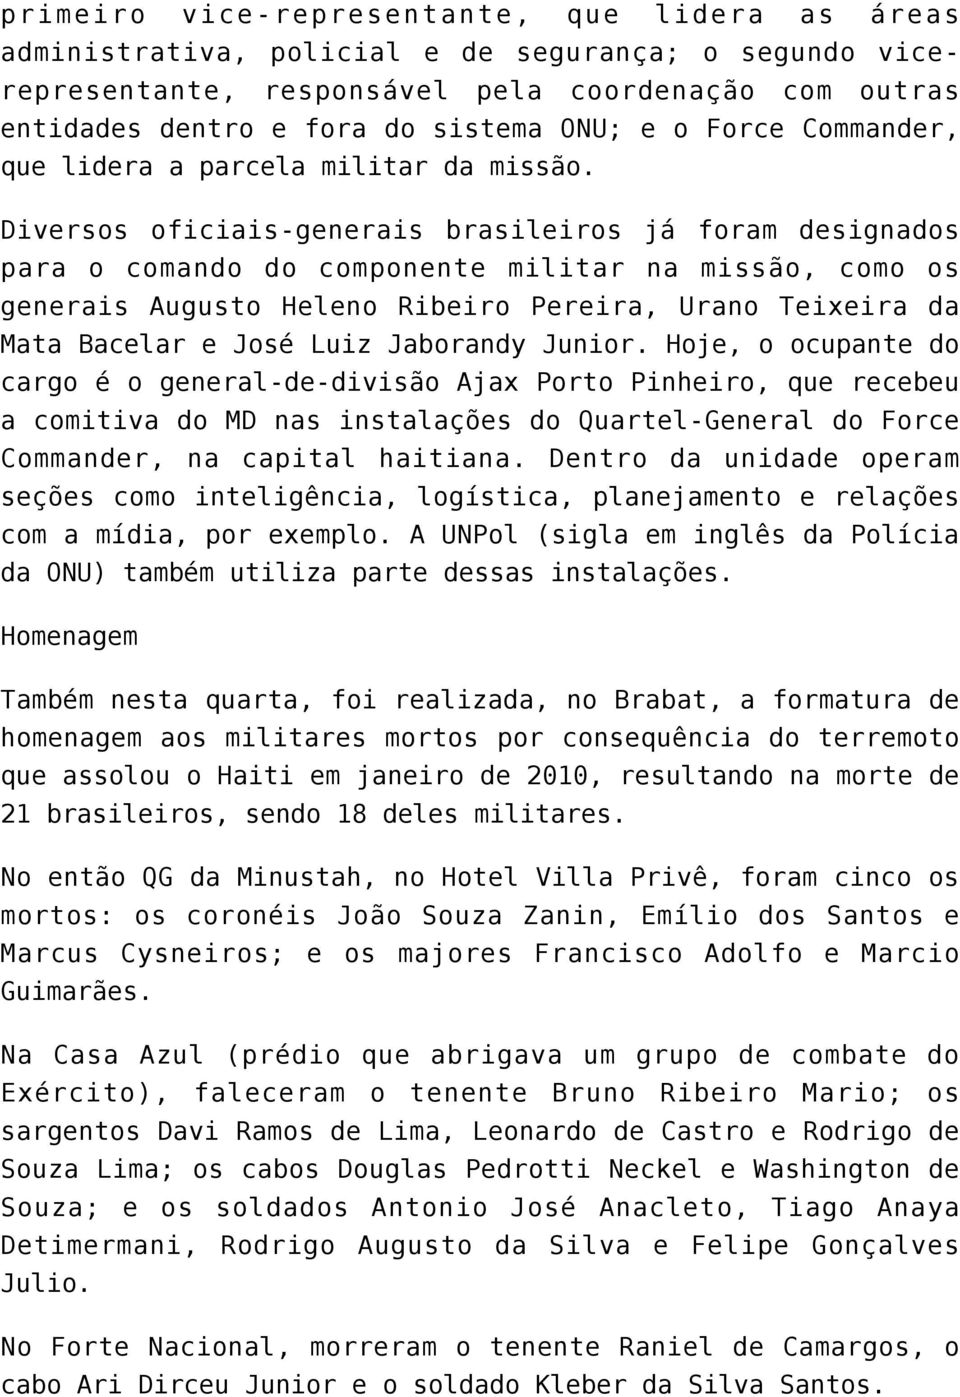 Diversos oficiais-generais brasileiros já foram designados para o comando do componente militar na missão, como os generais Augusto Heleno Ribeiro Pereira, Urano Teixeira da Mata Bacelar e José Luiz